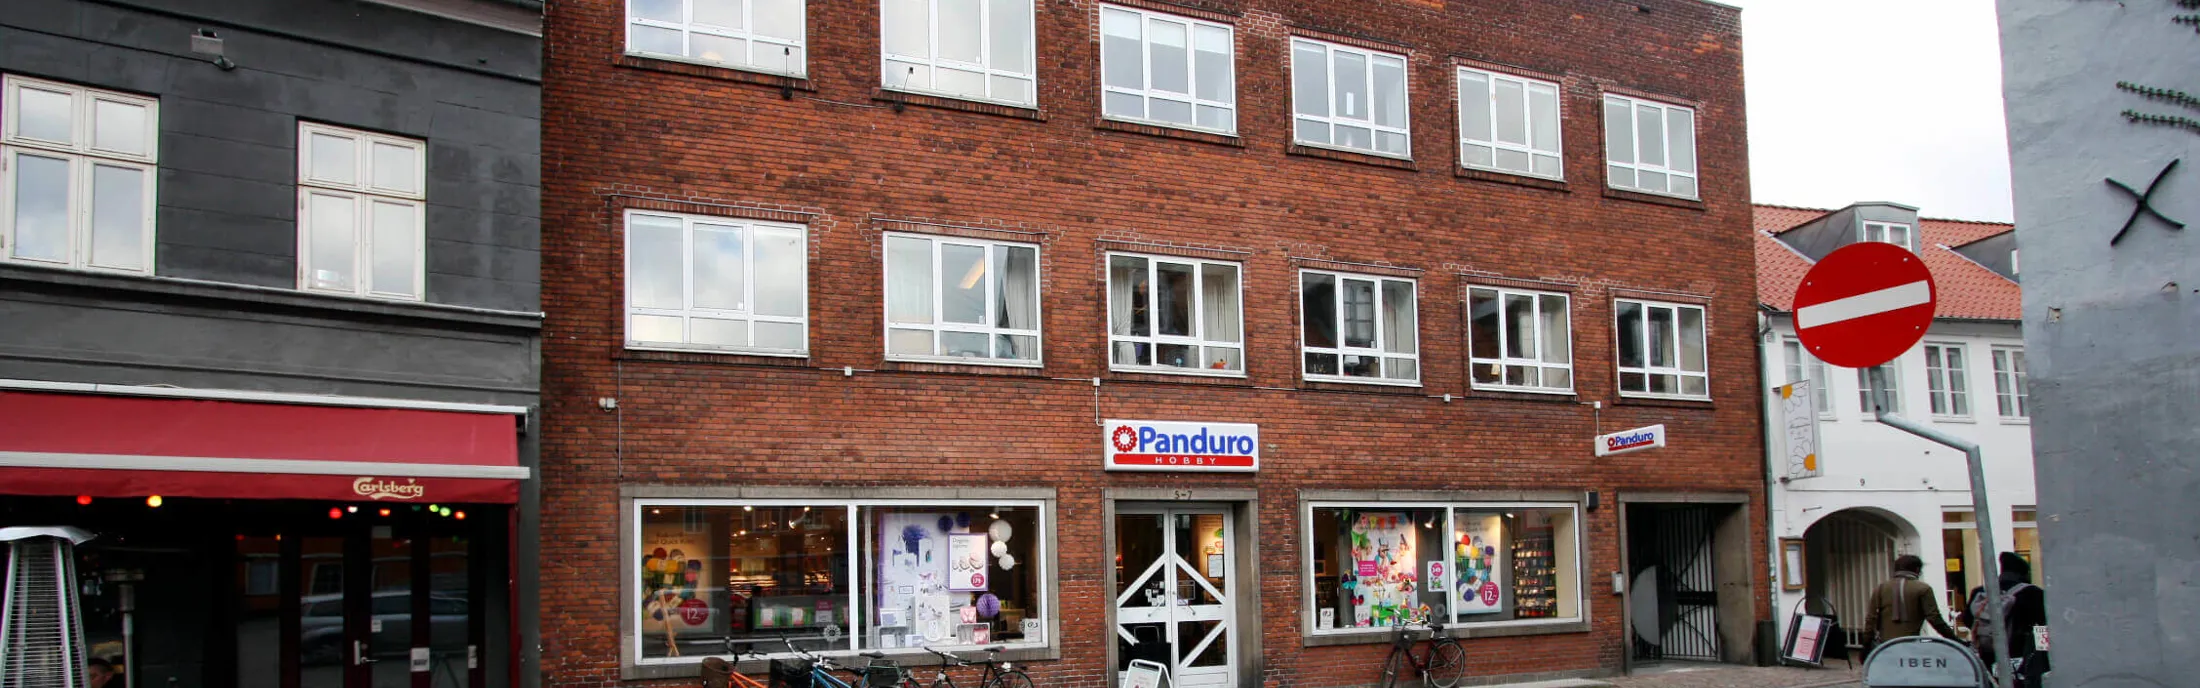 Facade på Panduro Hobby i Badestuegade 7 i Aarhus